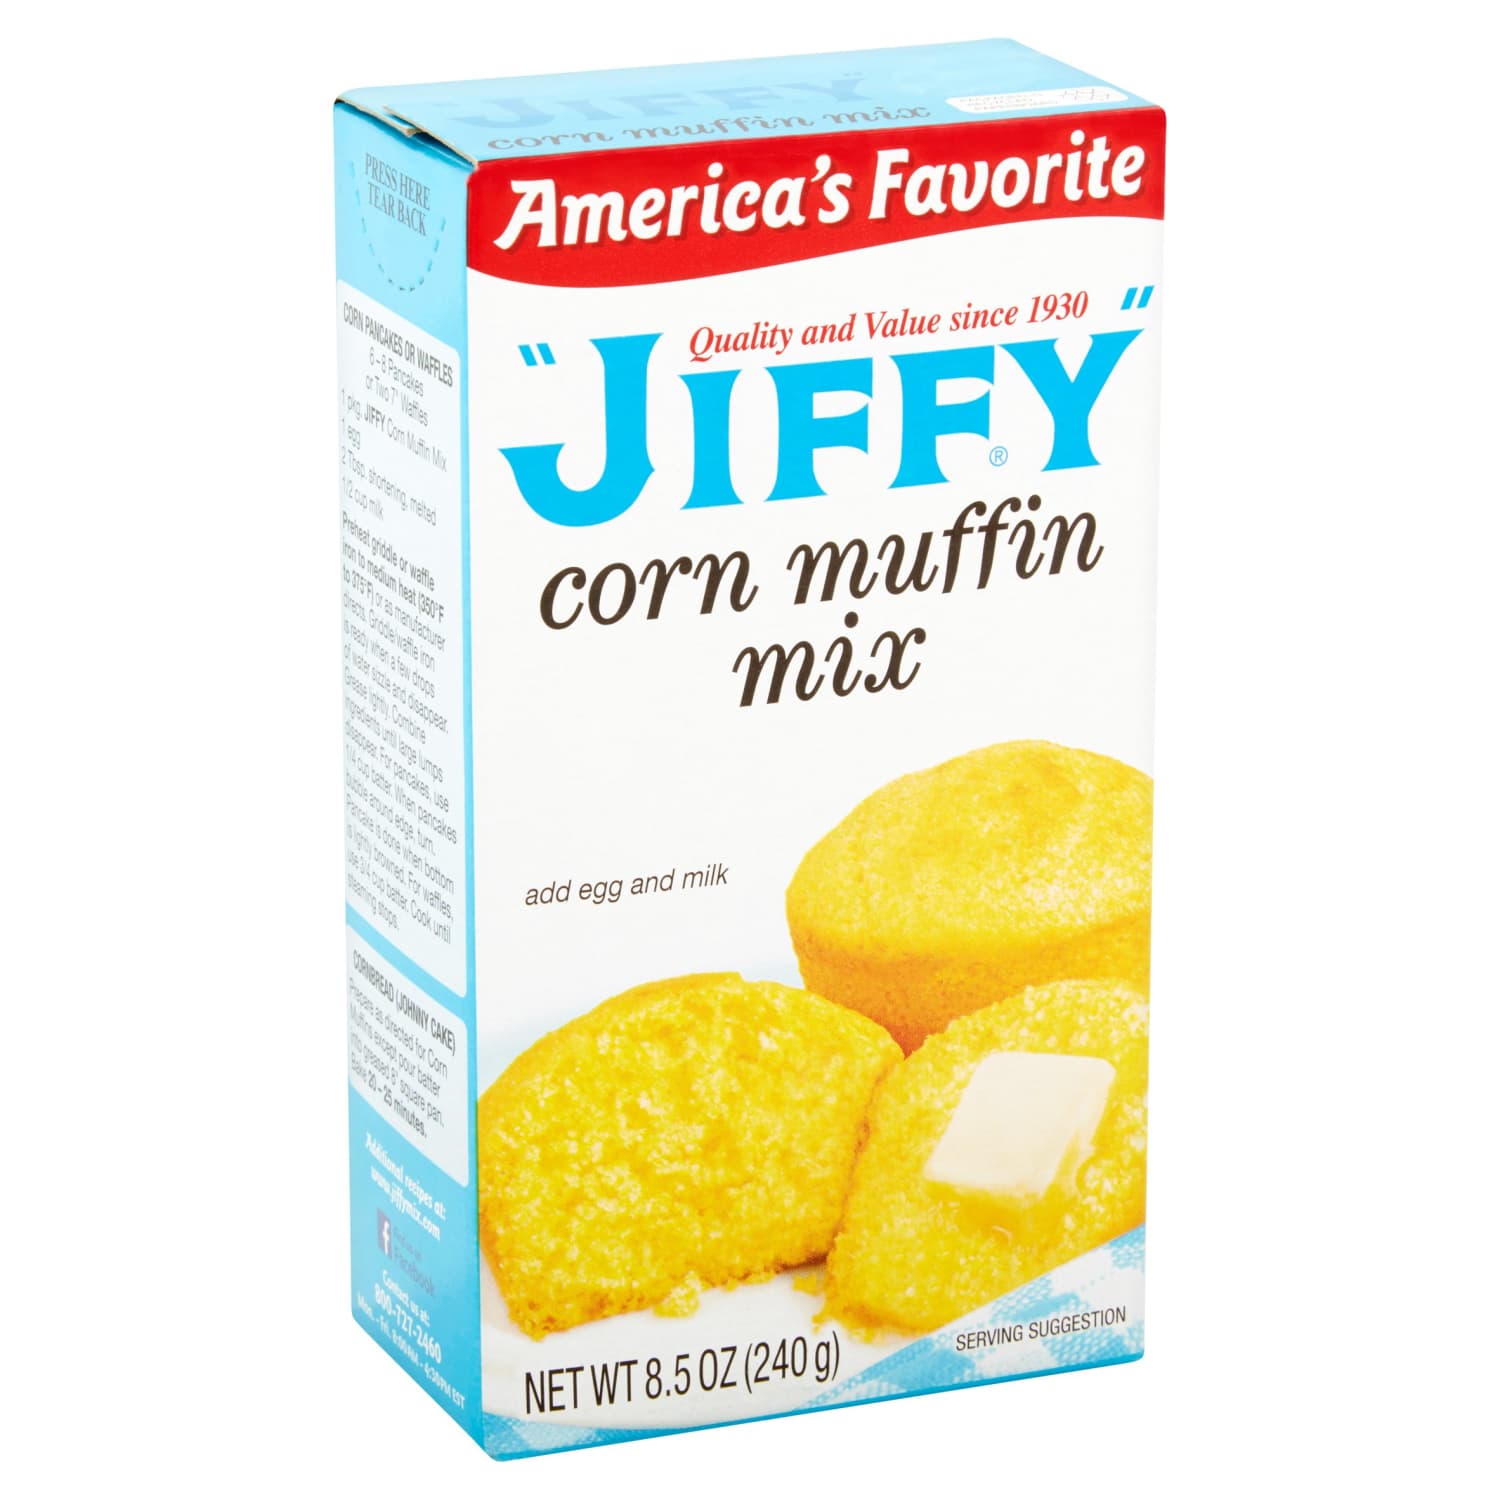 improving jiffy corn muffin mix